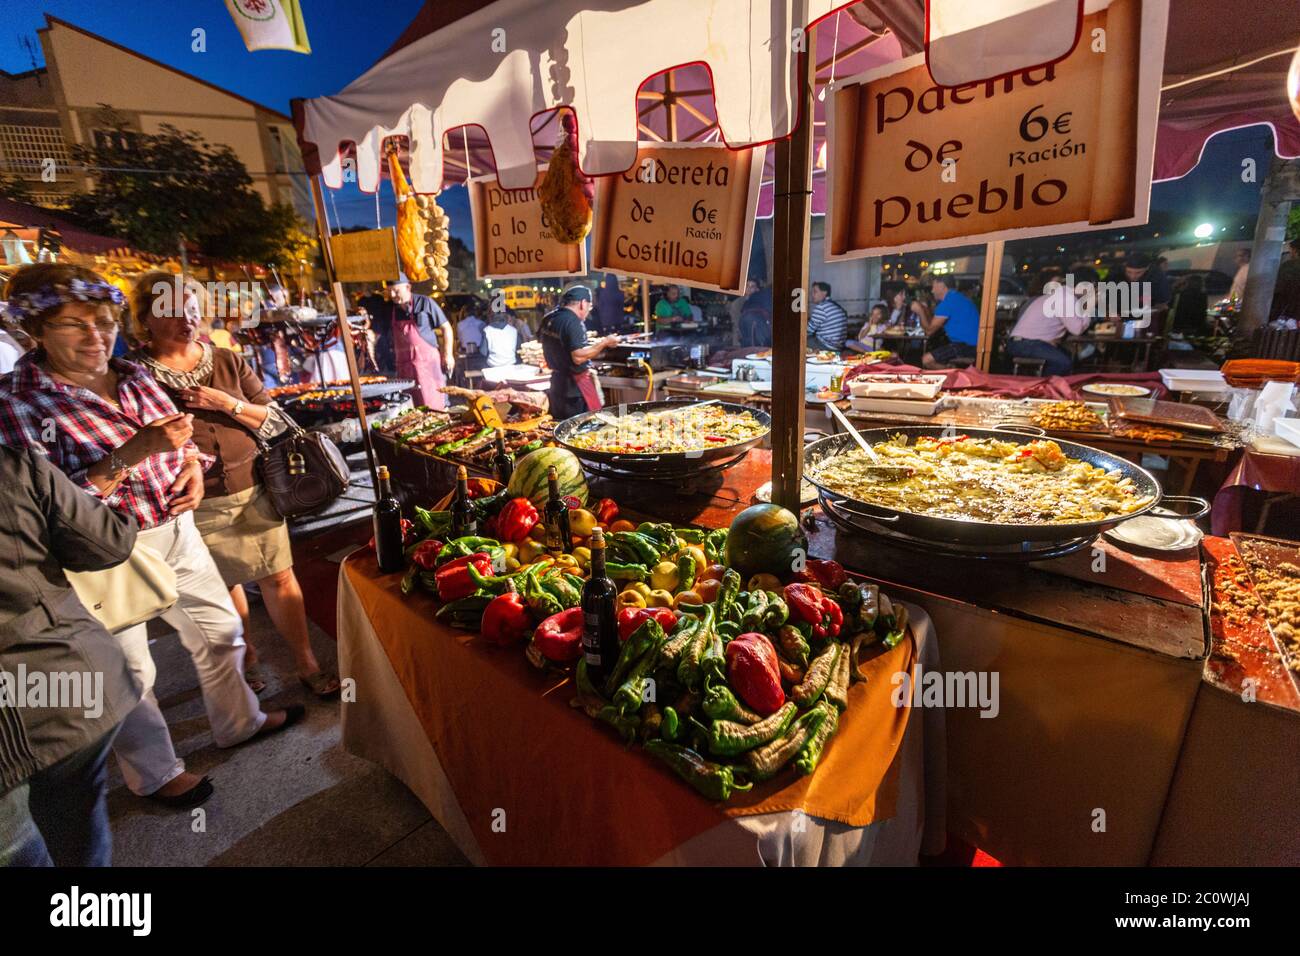 Paella stall dans le marché médiéval de Corcubion, Une province de la Coruña, Galice, Espagne Banque D'Images